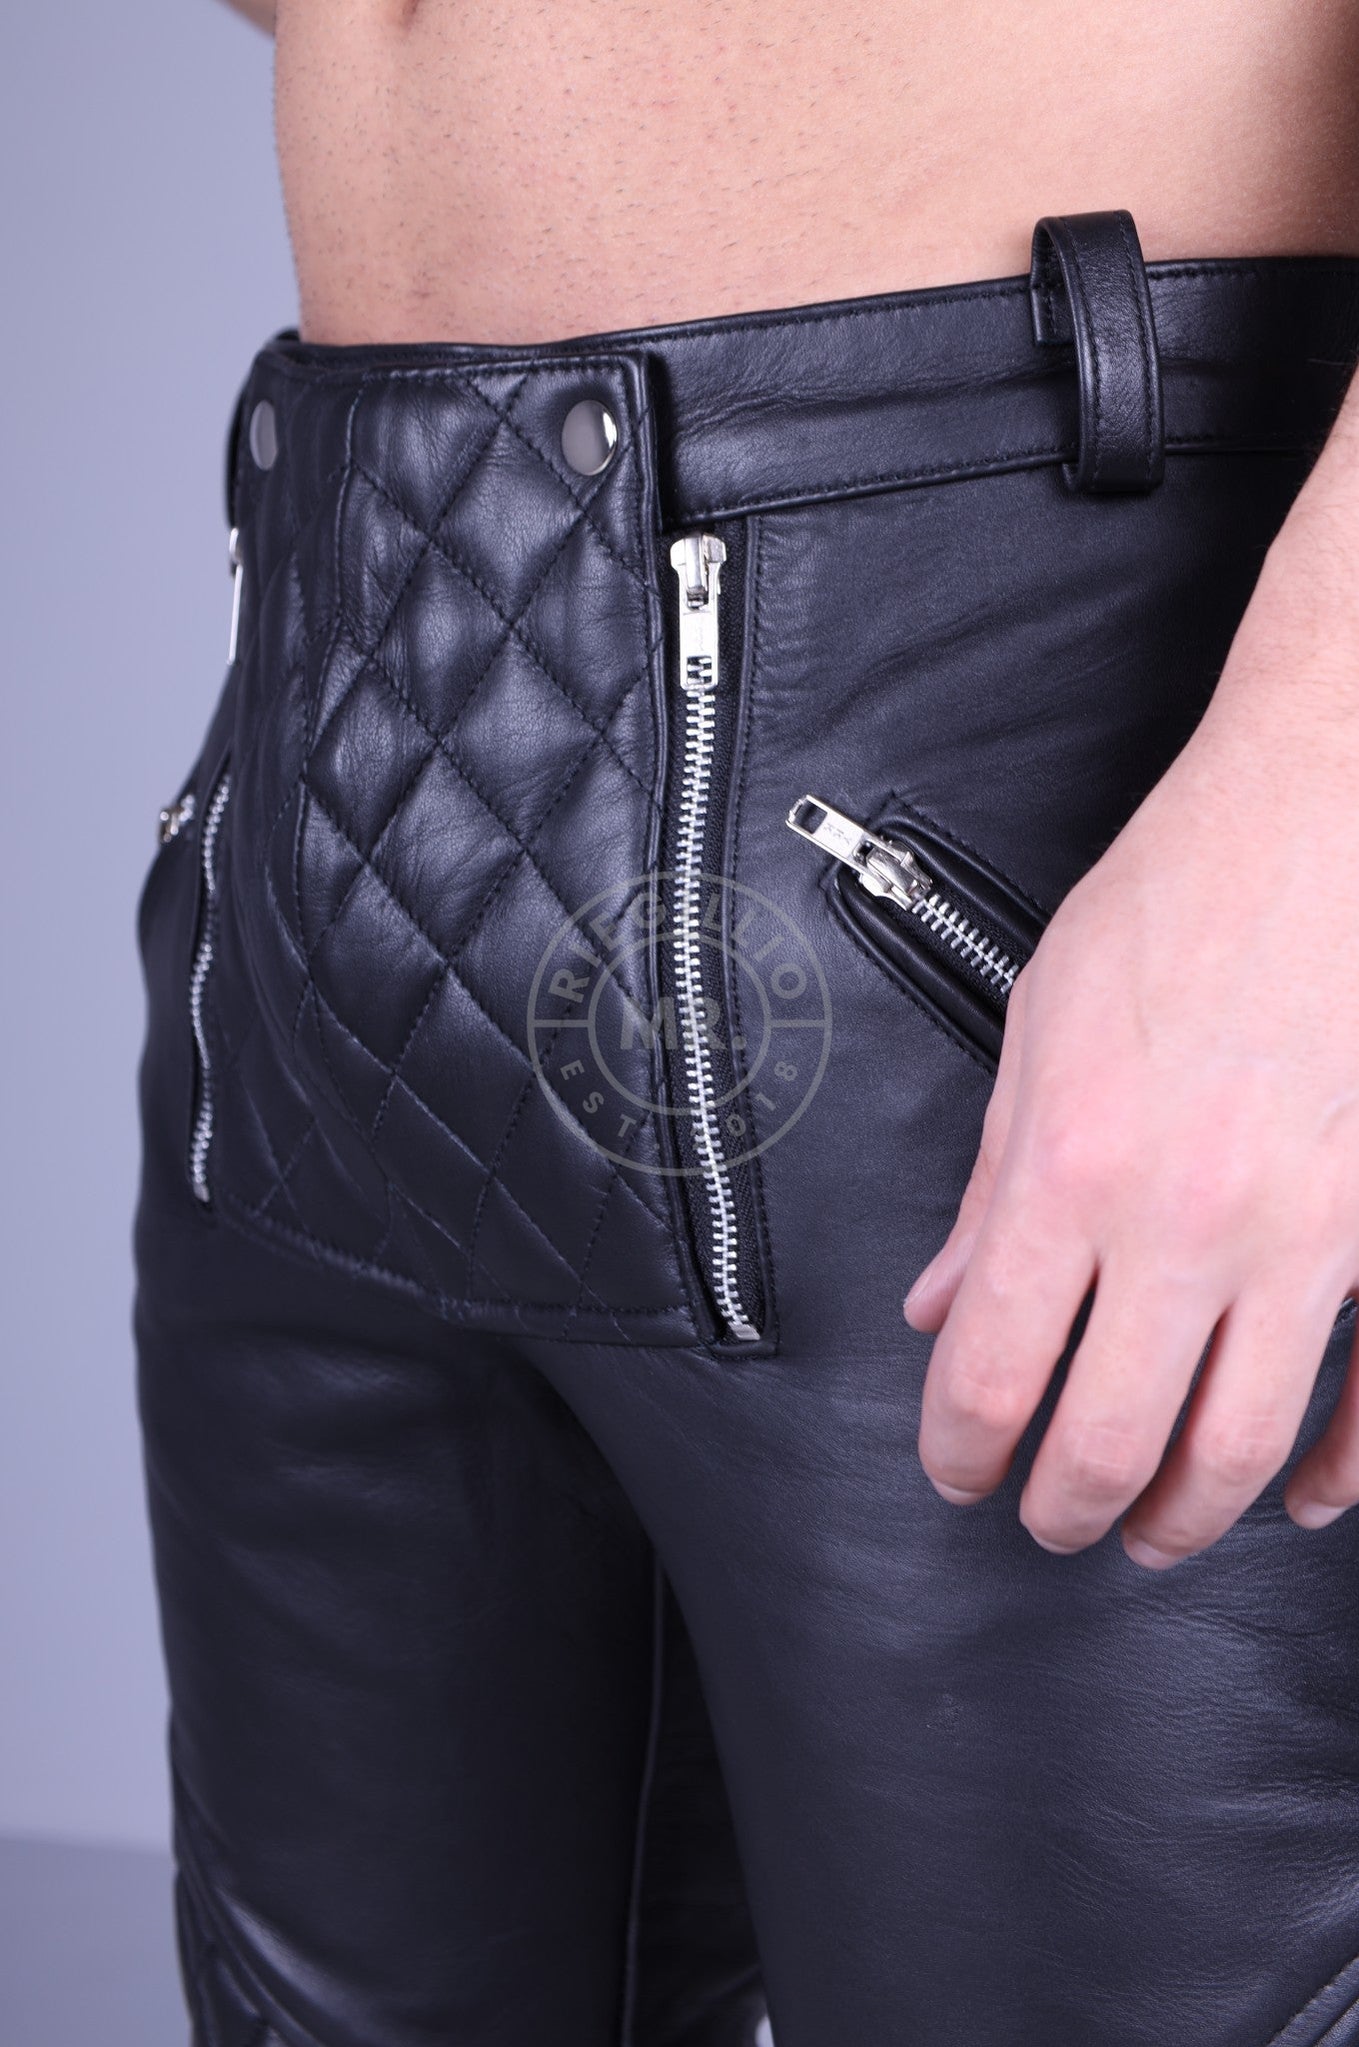 Mister B Leather FXXXer Jeans All Black von Mr Riegillio